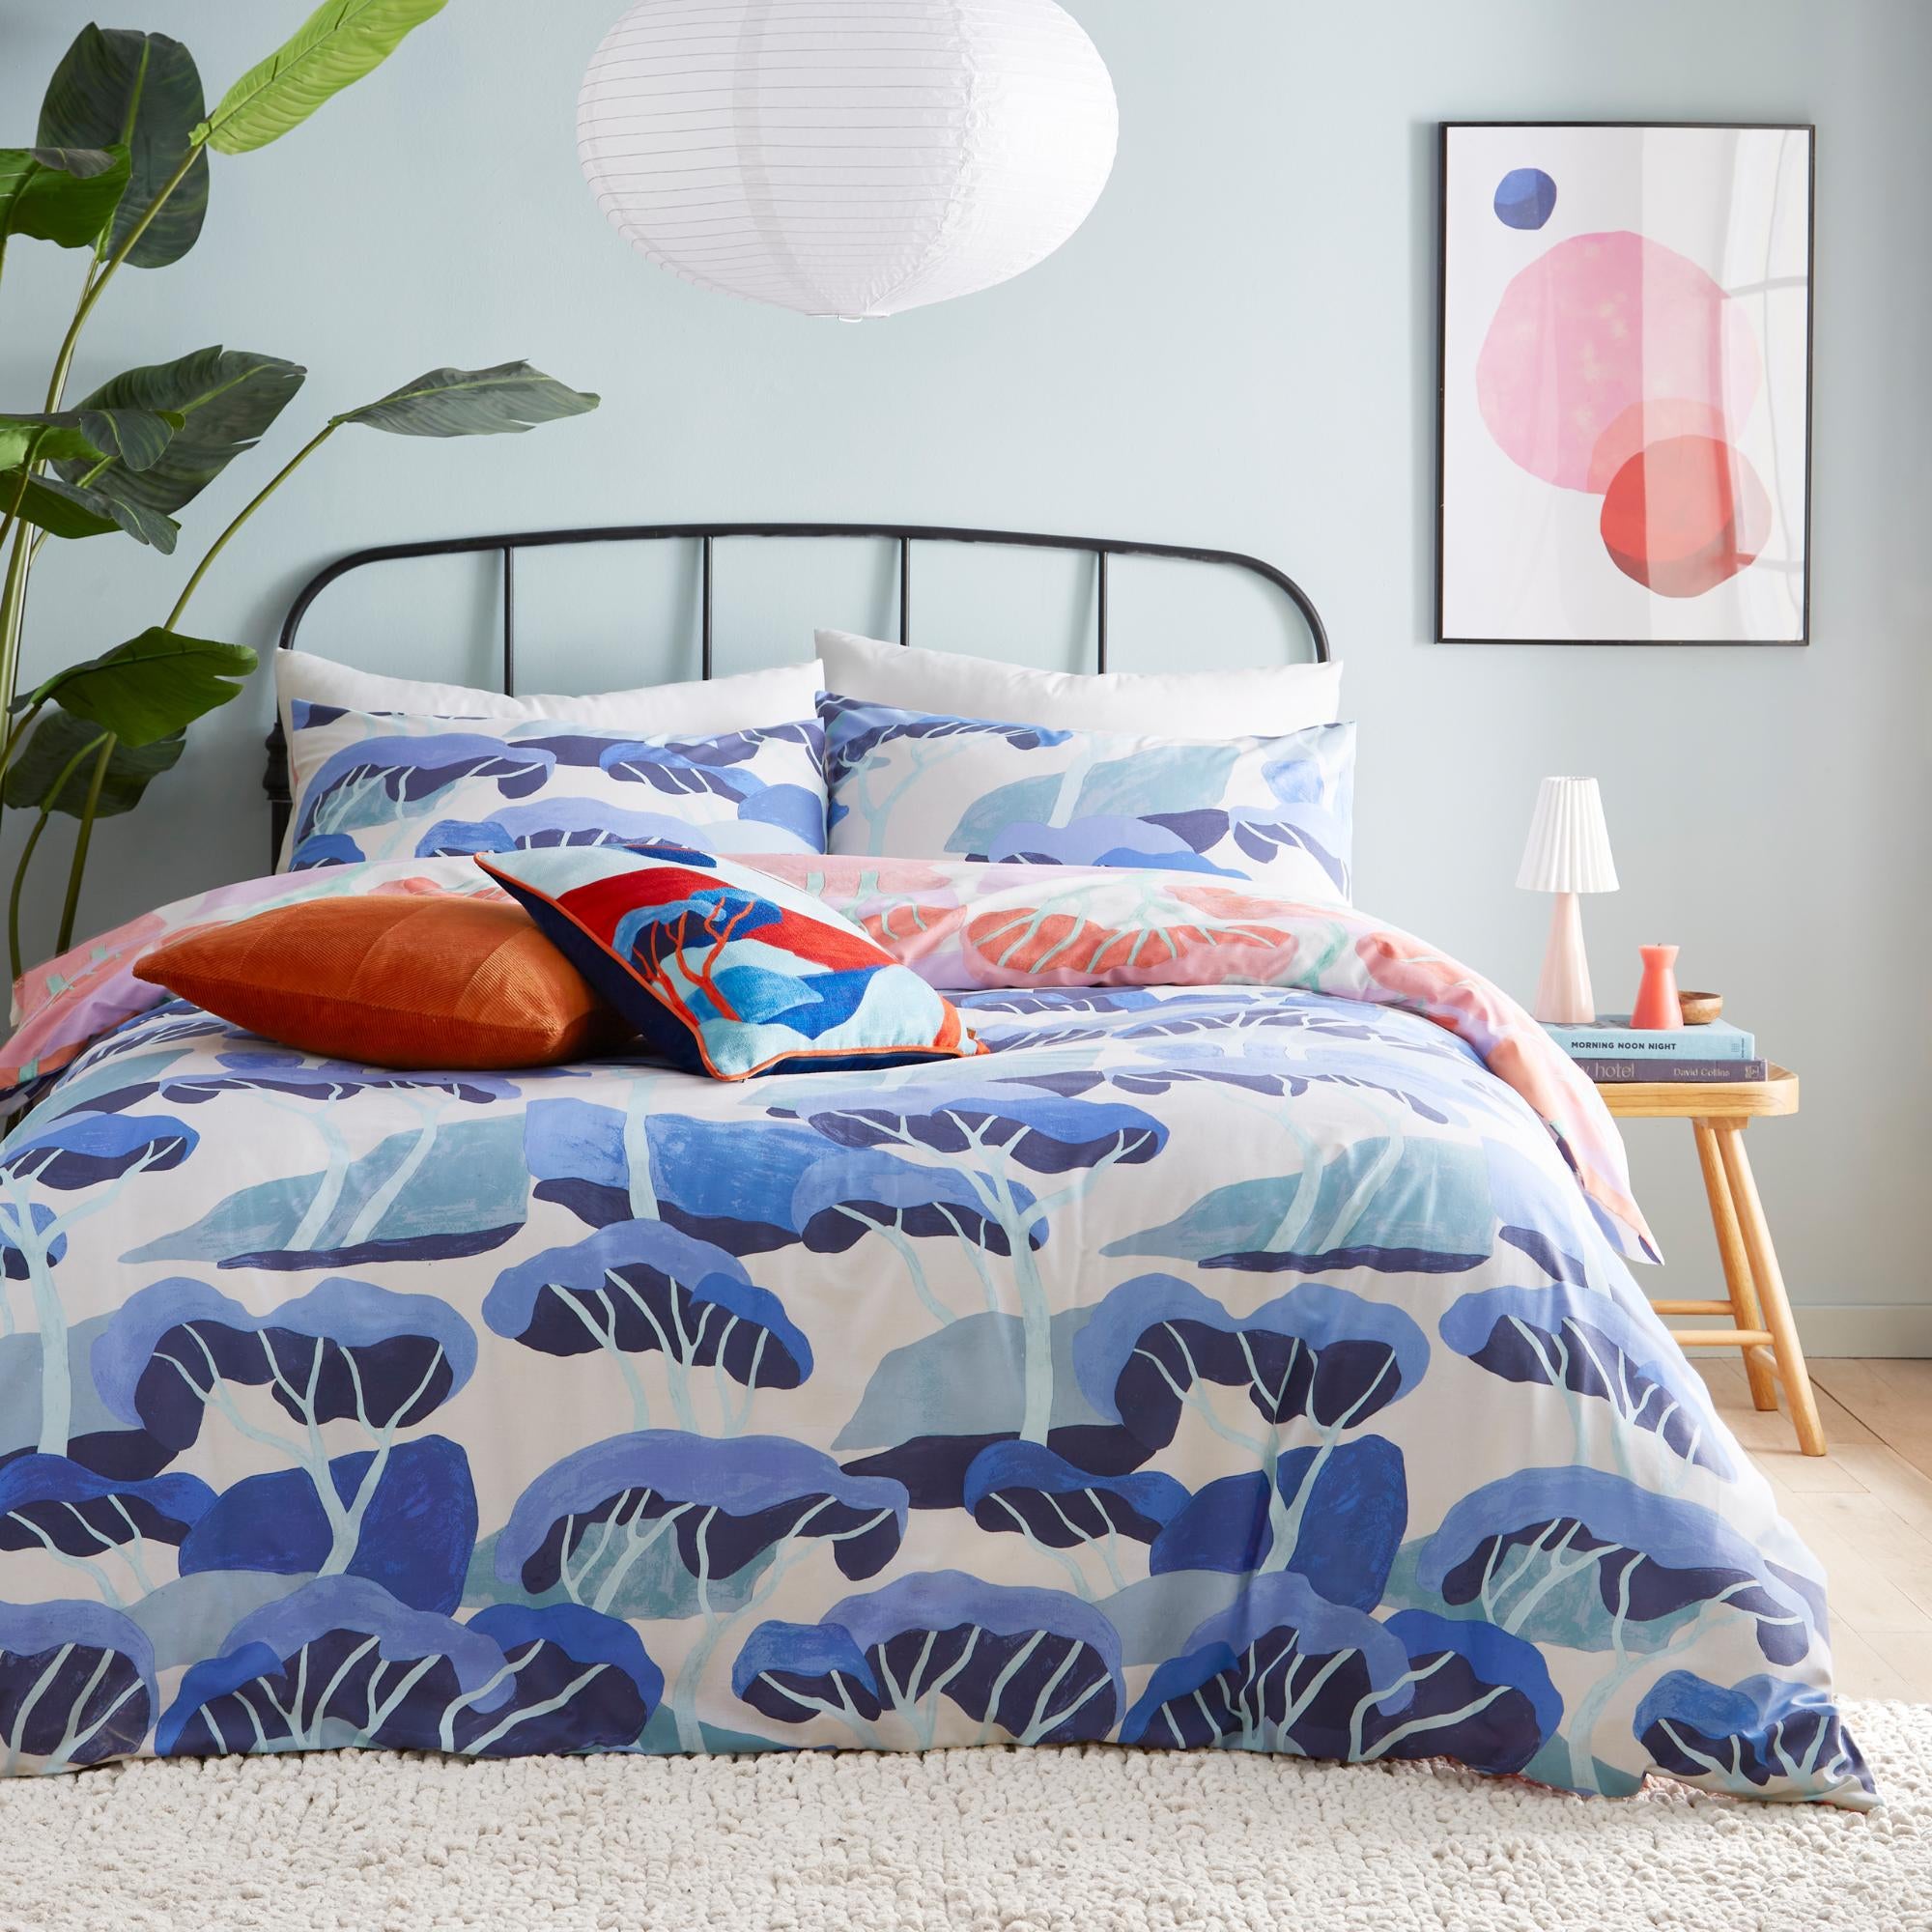 Furn Dazure Duvet Cover And Pillowcase Set Multicoloured